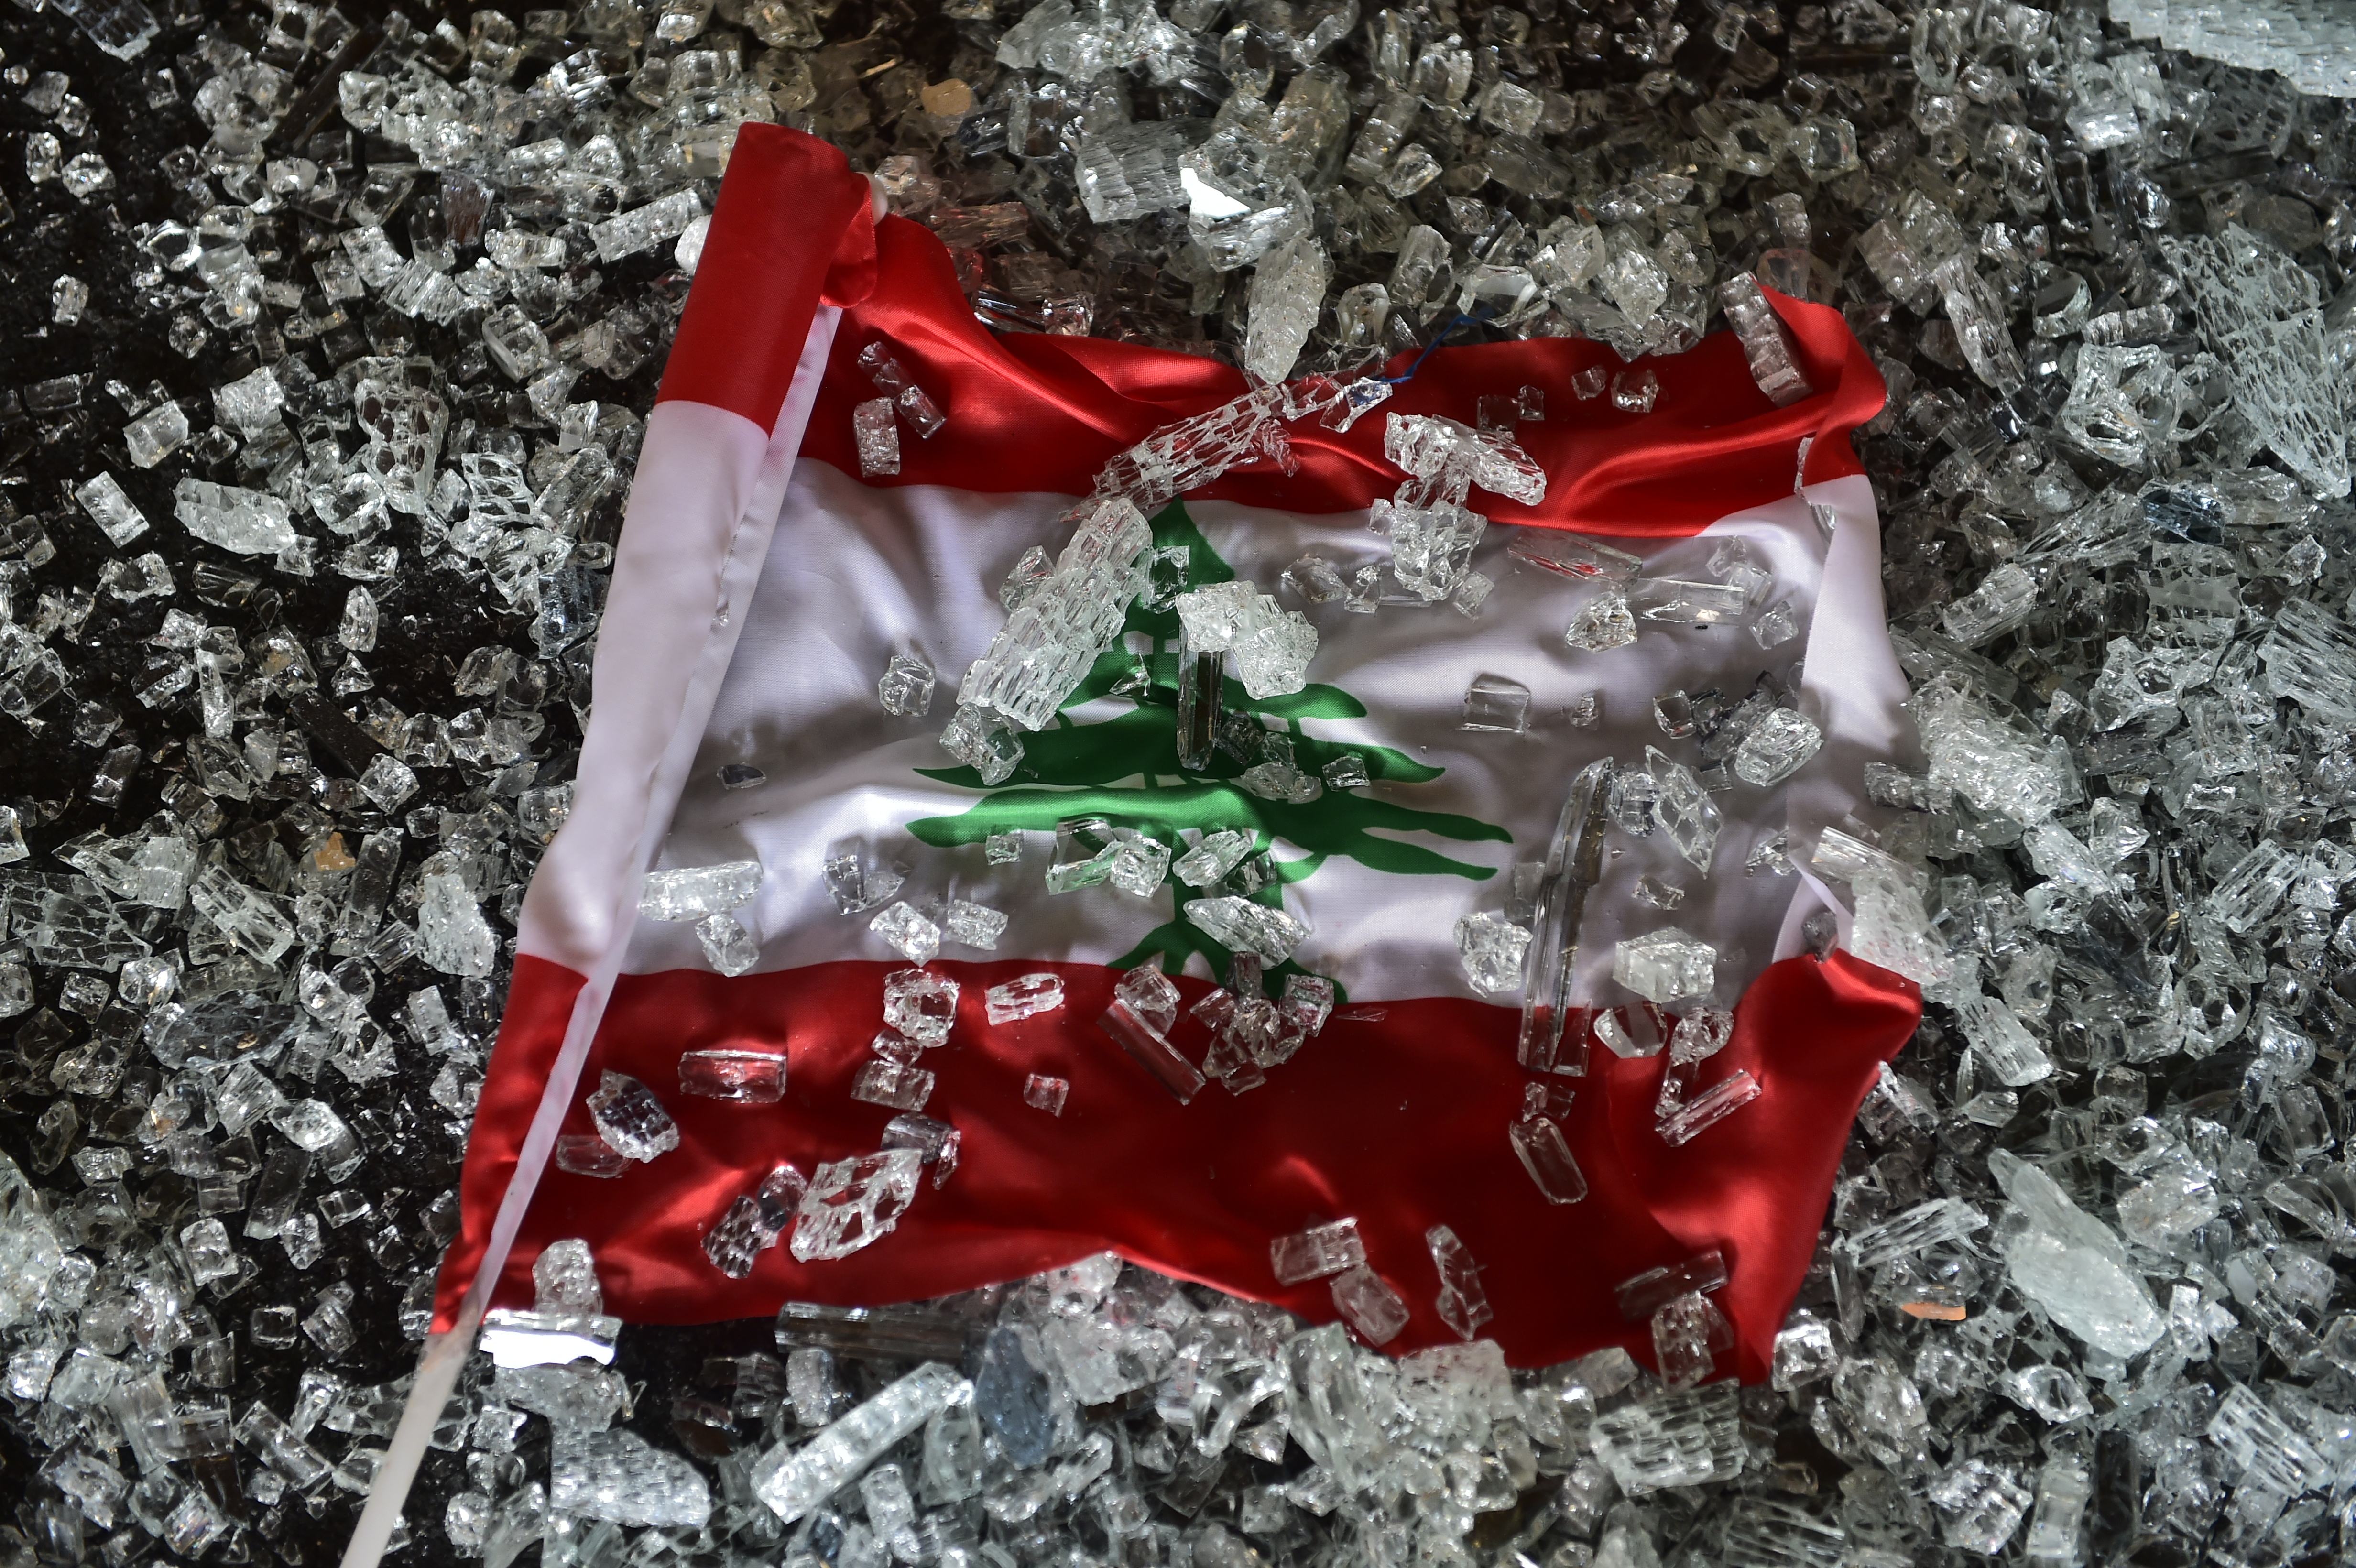 Libanon nemzeti zászlaja a kedd esti robbanás lökéshullámától berobbant kirakatüveg törmelékében.